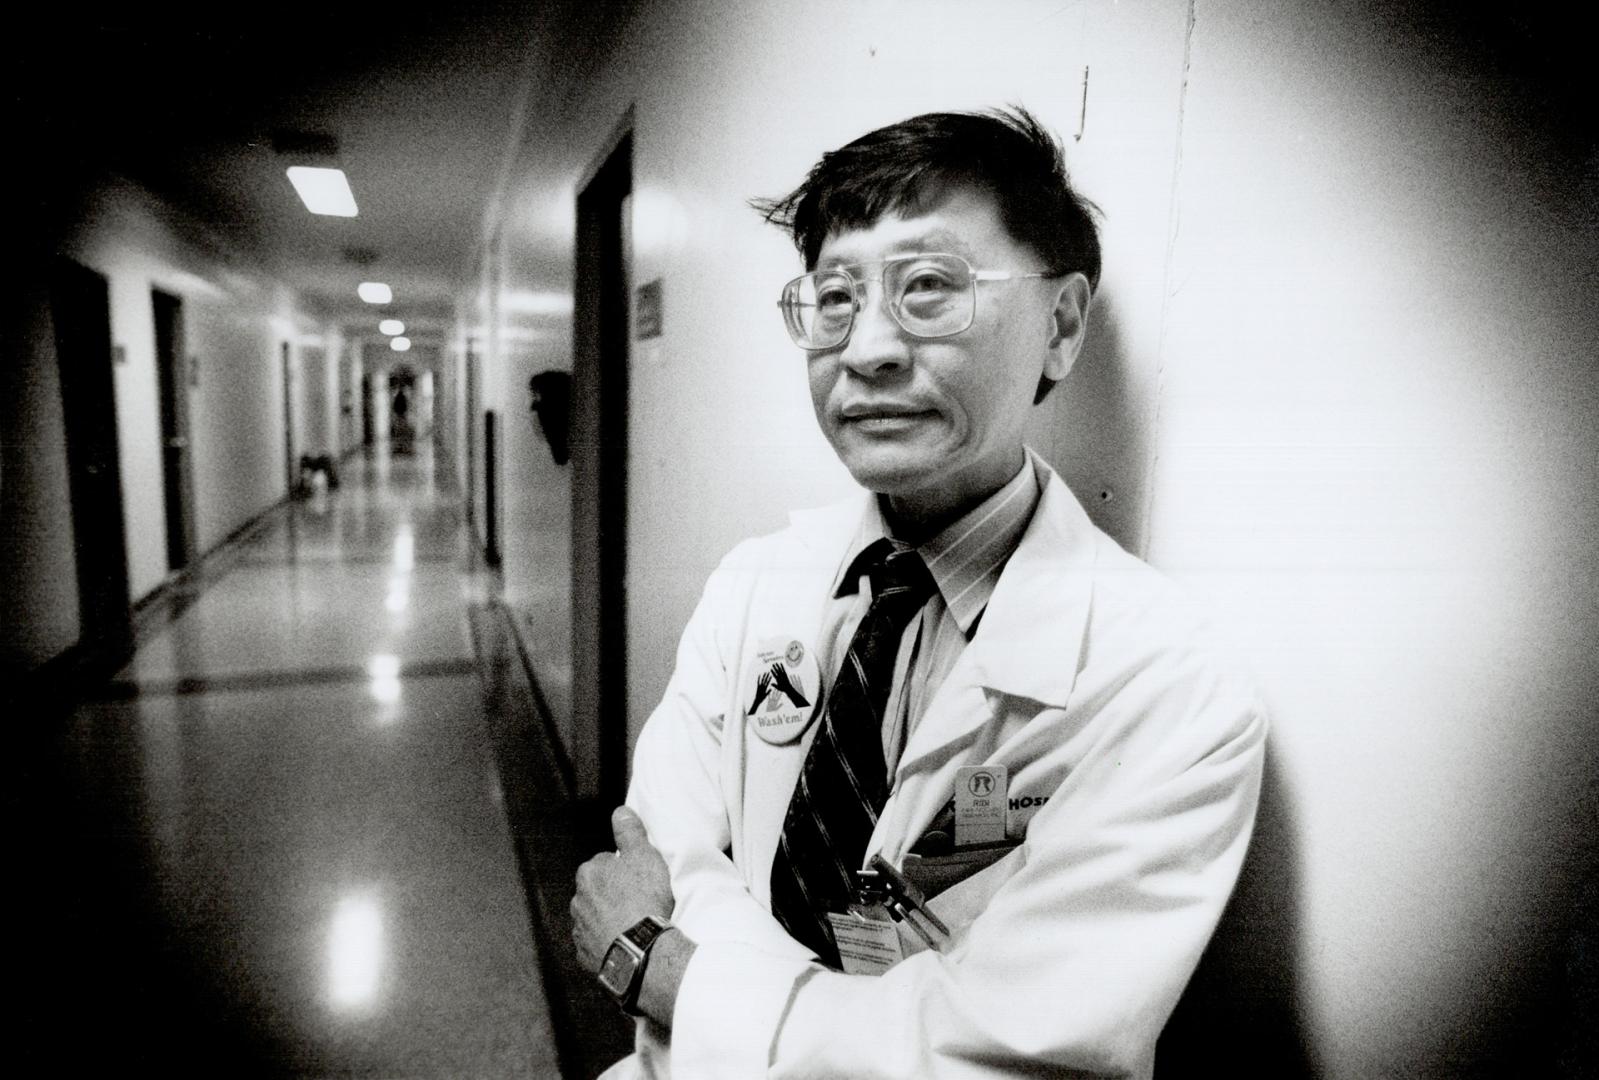 Dr. Bill Fong